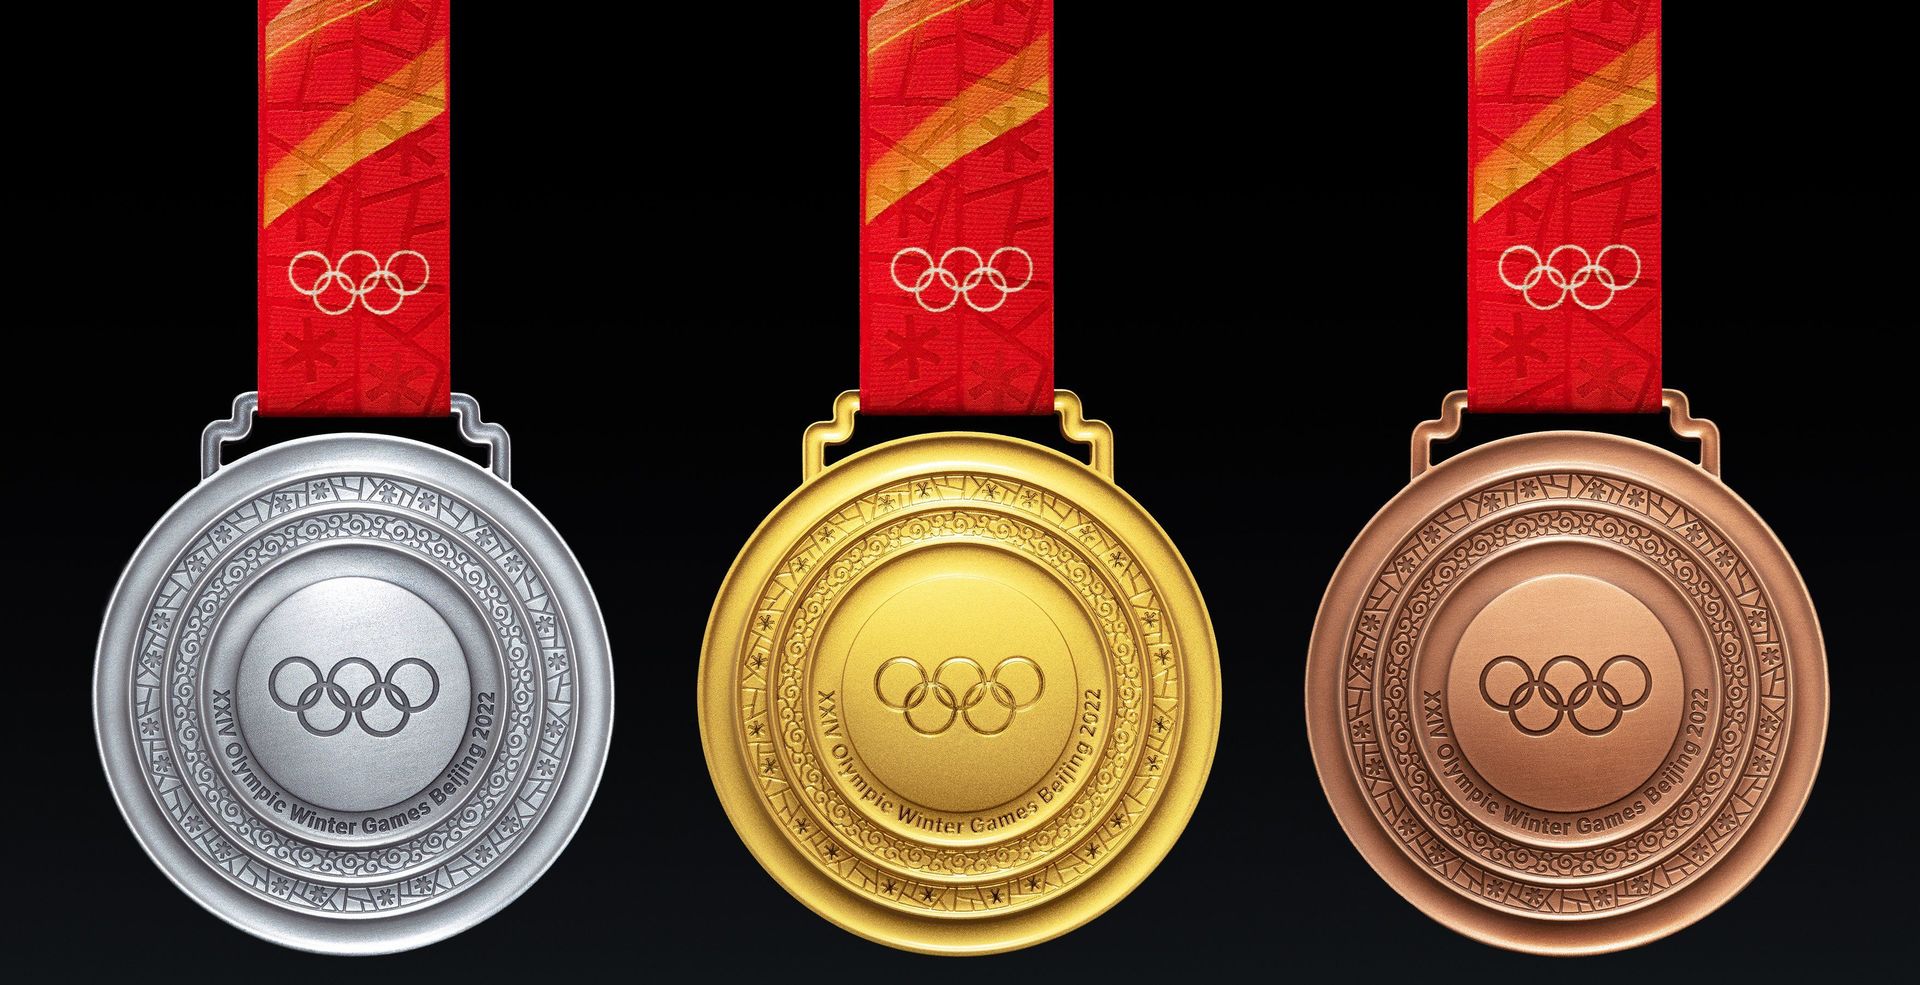 Diseño y material de las medallas de los Juegos Olímpicos de Invierno Pekin  2022